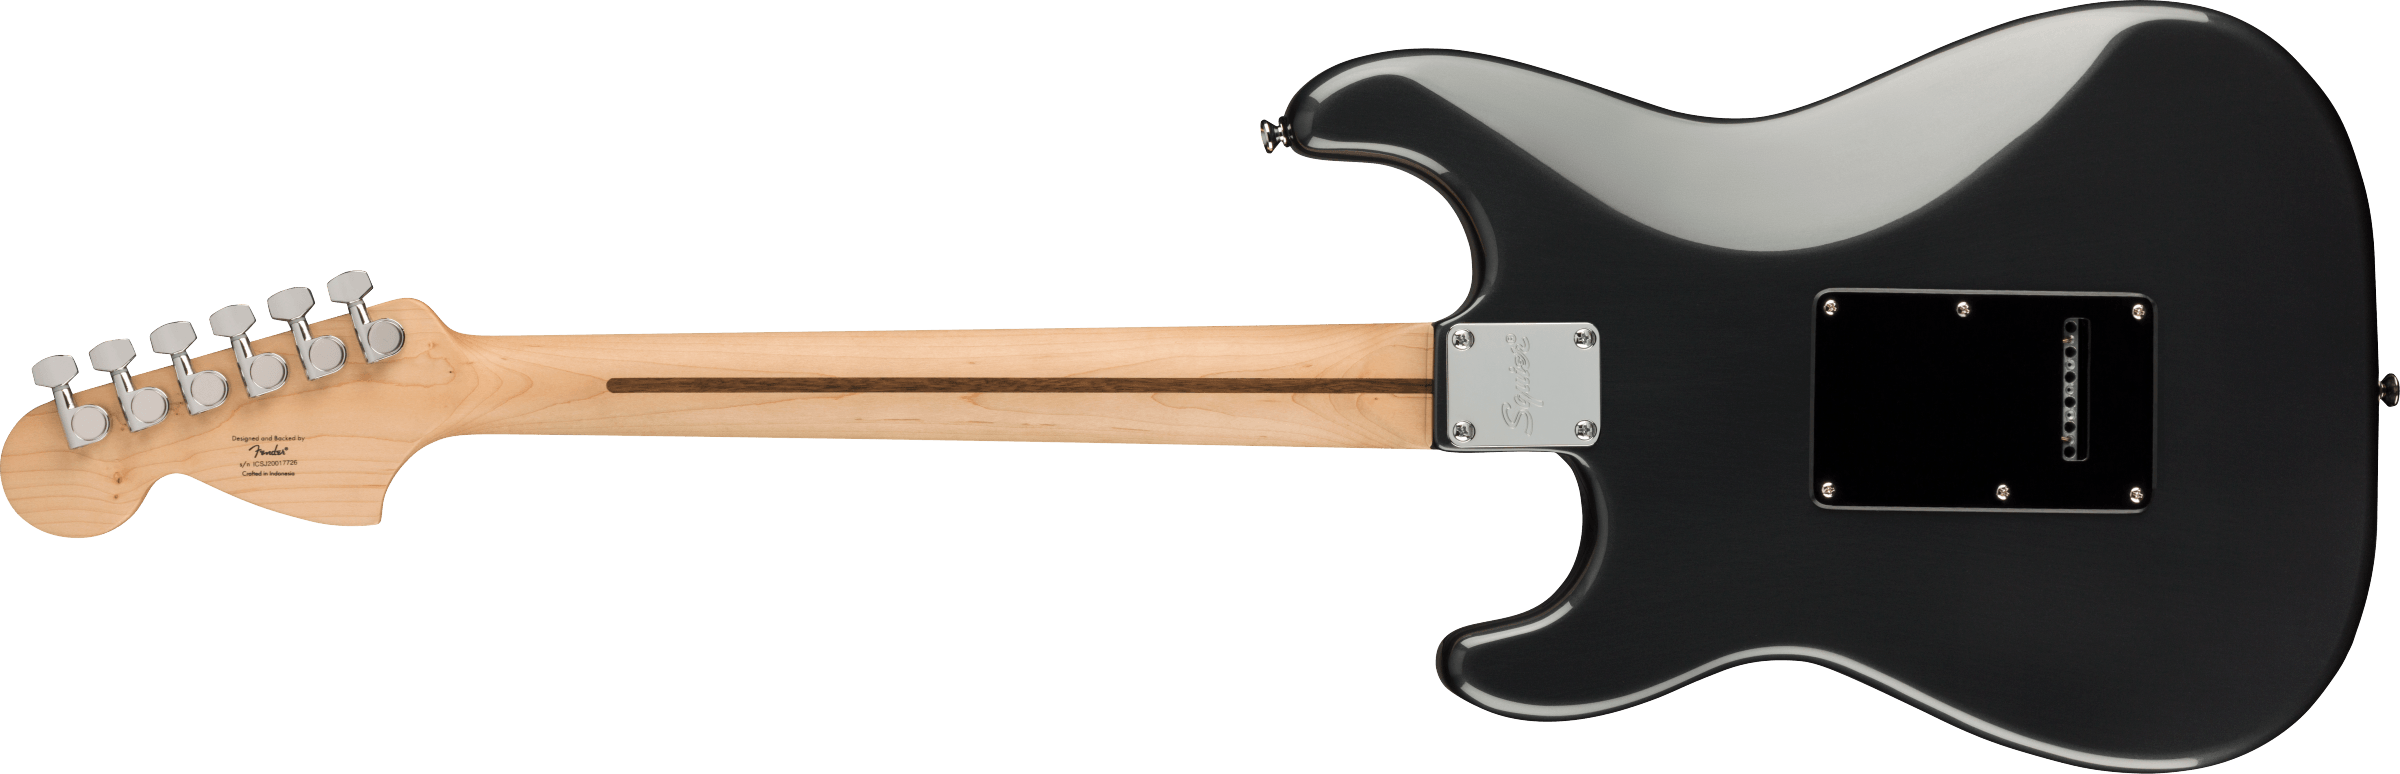 Squier Strat Affinity Hss Pack +fender Frontman 15g 2021 Trem Lau - Charcoal Frost Metallic - Pack Guitare Électrique - Variation 2